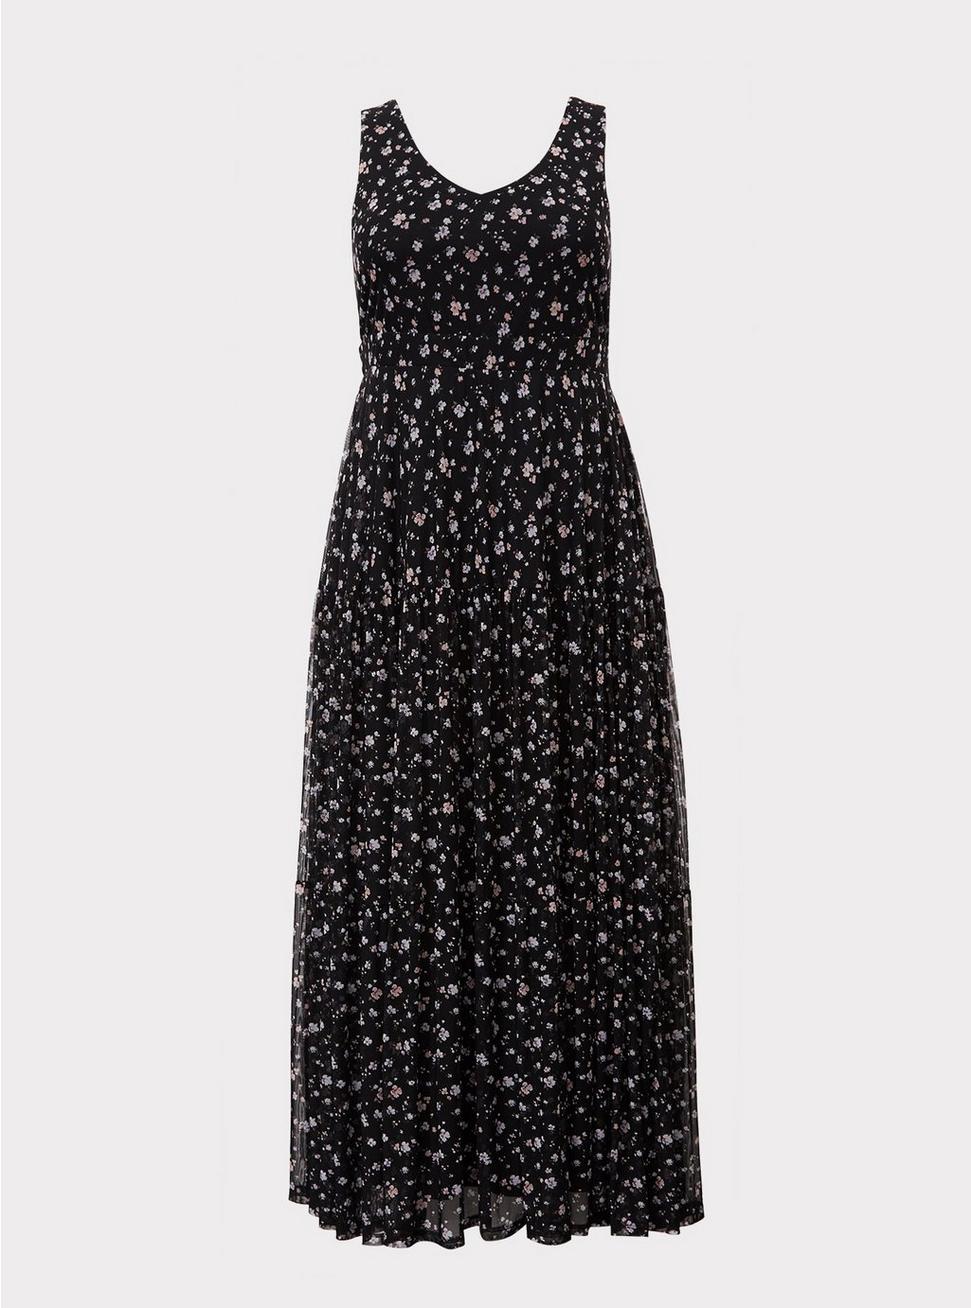 Plus Size - Black Floral Tier Mesh Maxi Dress - Torrid